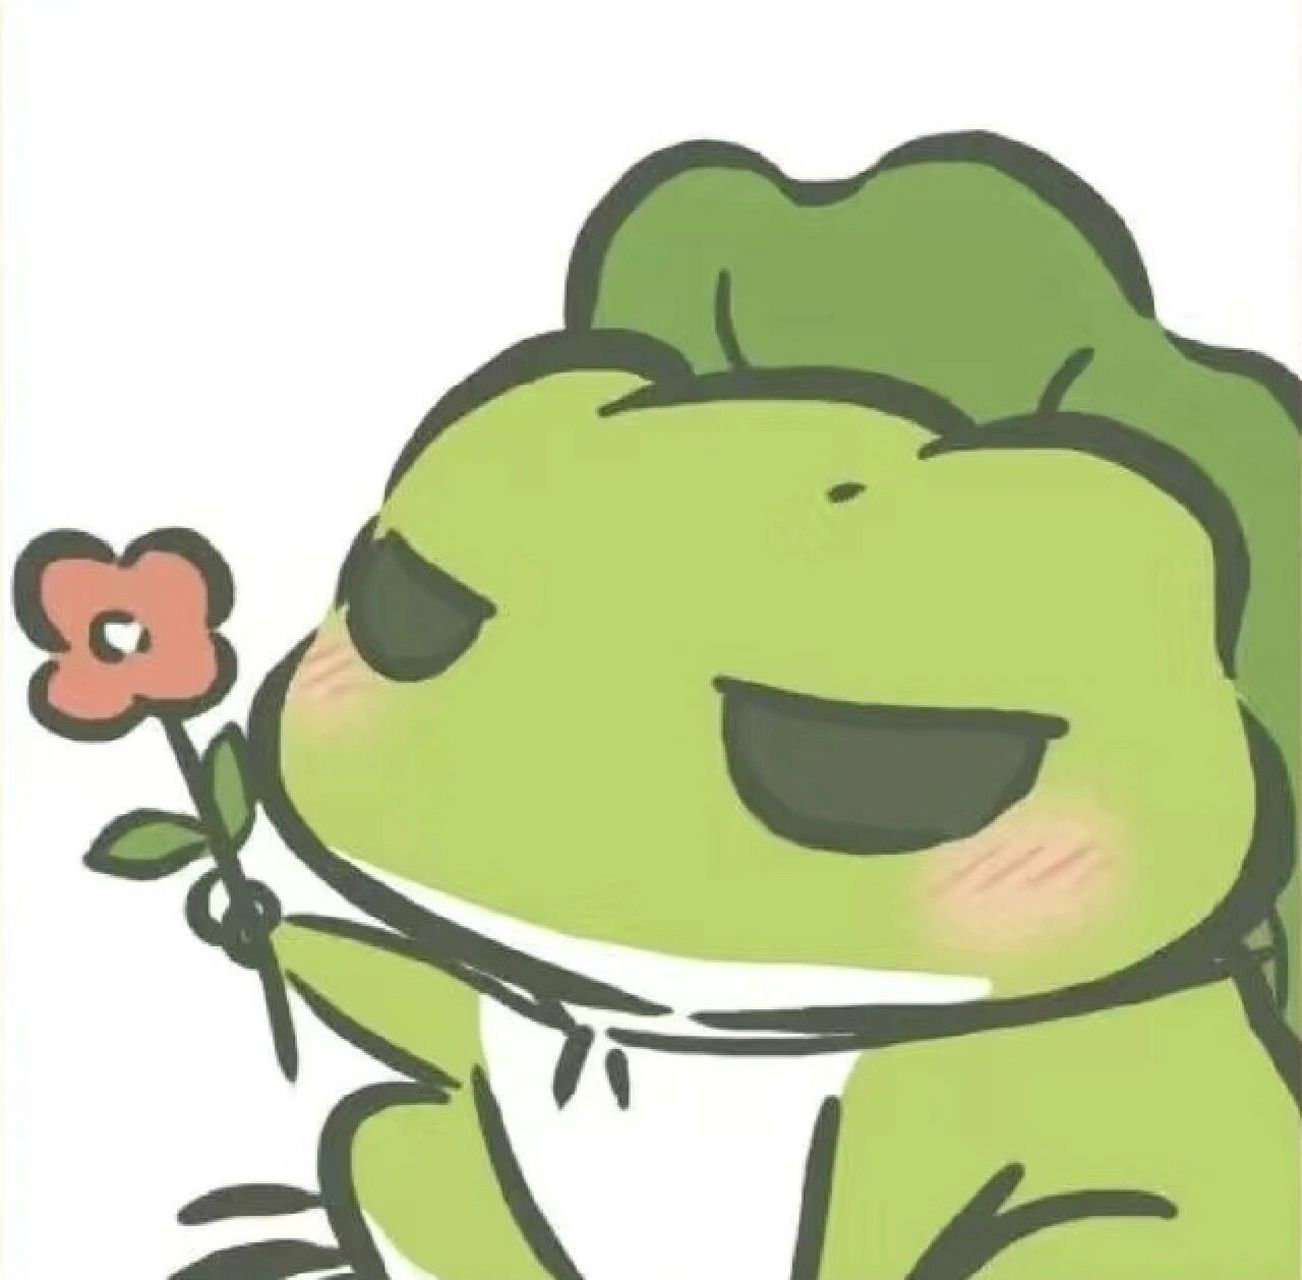 动漫青蛙头像情侣图片